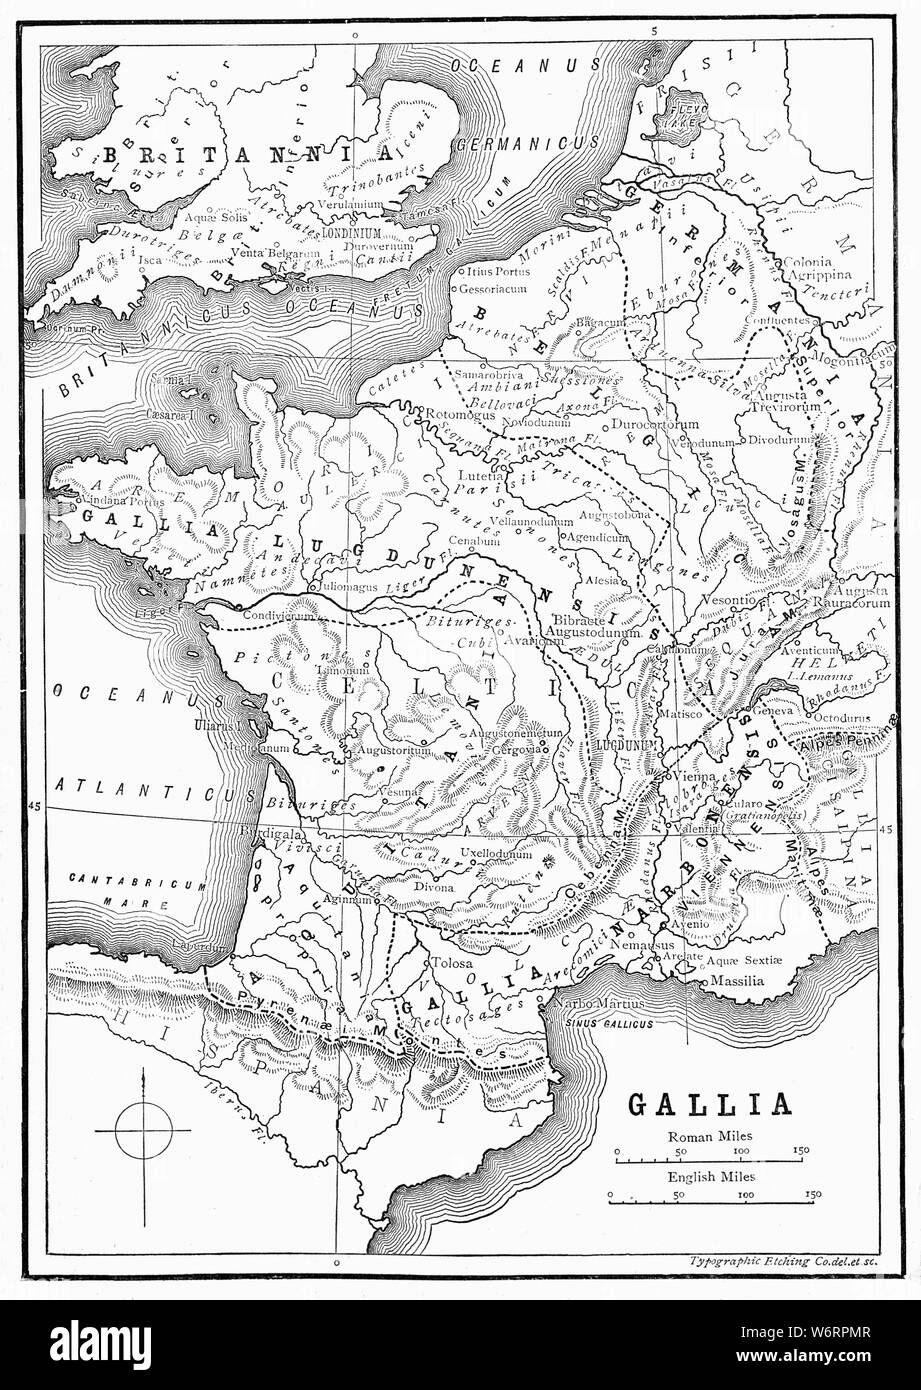 Un mapa del siglo XIX ilustrando la provincia romana de Gallia, hogar de los galos, y Britannia. Hoy poco |cubre Francia, Bélgica y el sur de Inglaterra. Foto de stock